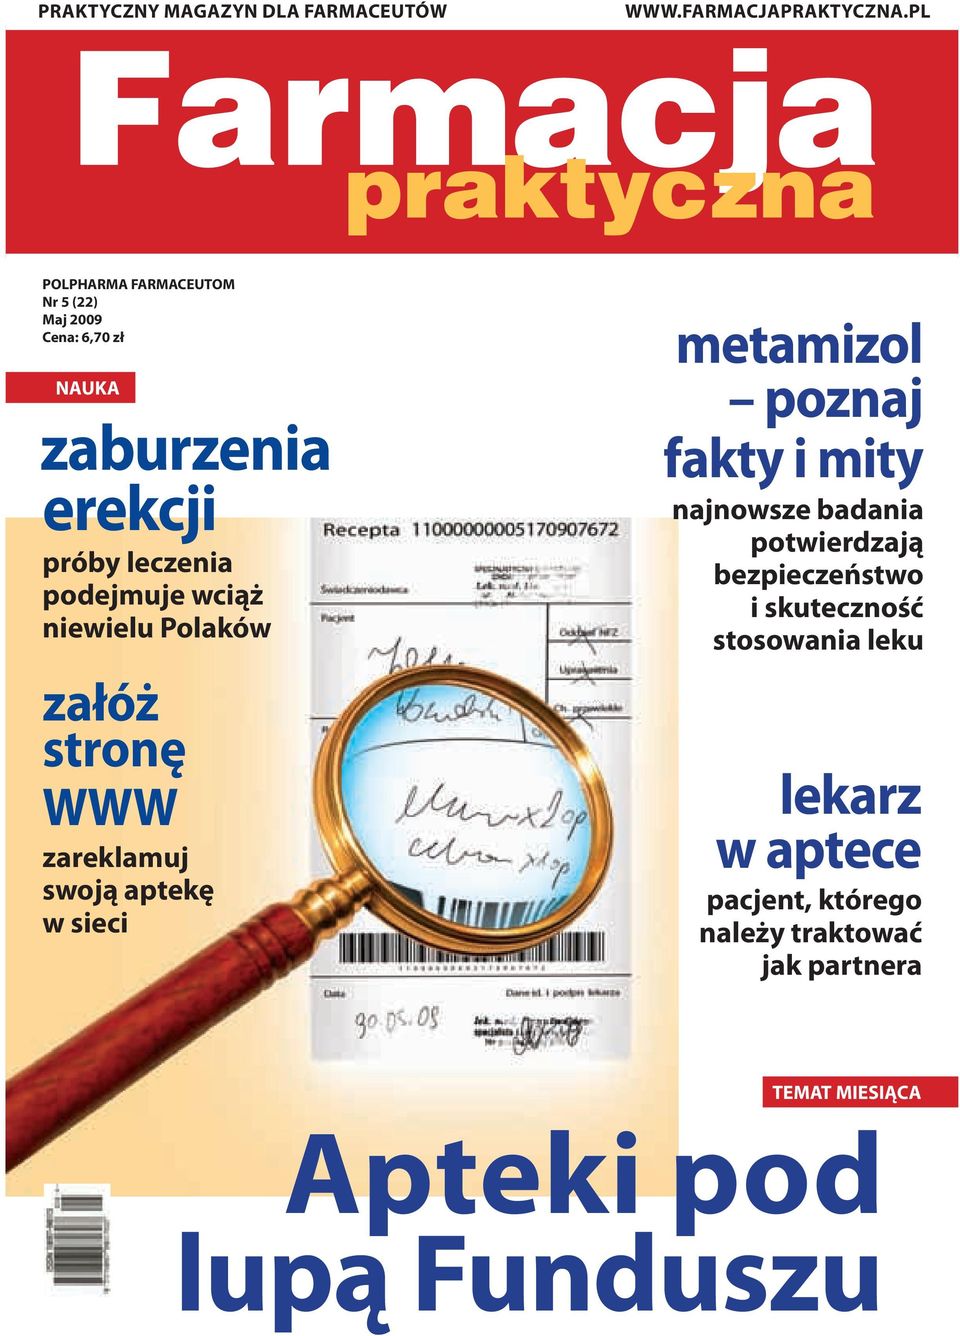 wciąż niewielu Polaków załóż stronę WWW zareklamuj swoją aptekę w sieci metamizol poznaj fakty i mity najnowsze